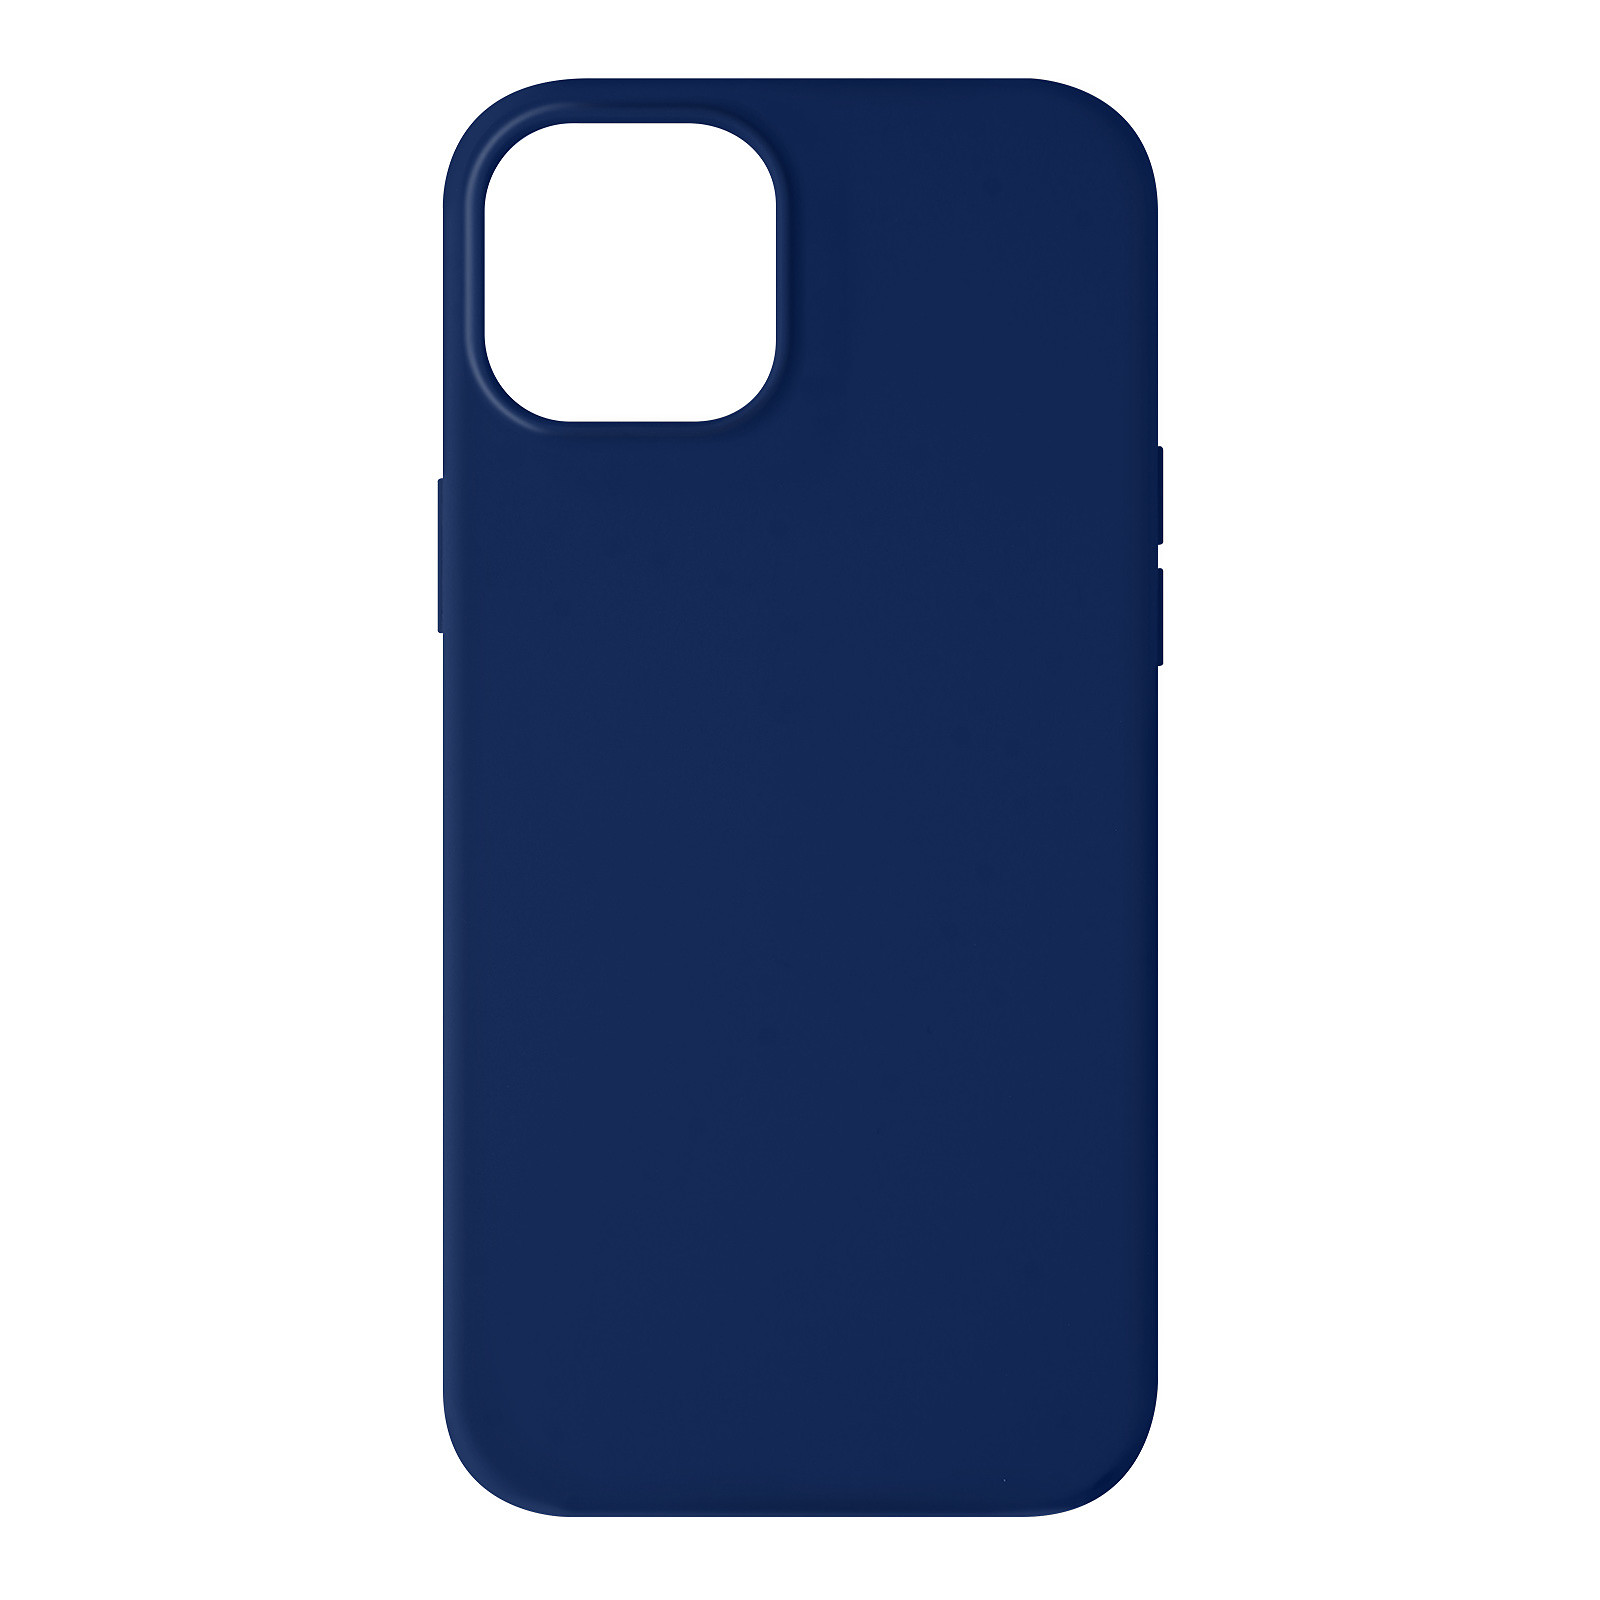 Avizar Coque pour iPhone 13 Mini Silicone Semi-rigide Finition Soft-touch Bleu roi - Coque telephone Avizar